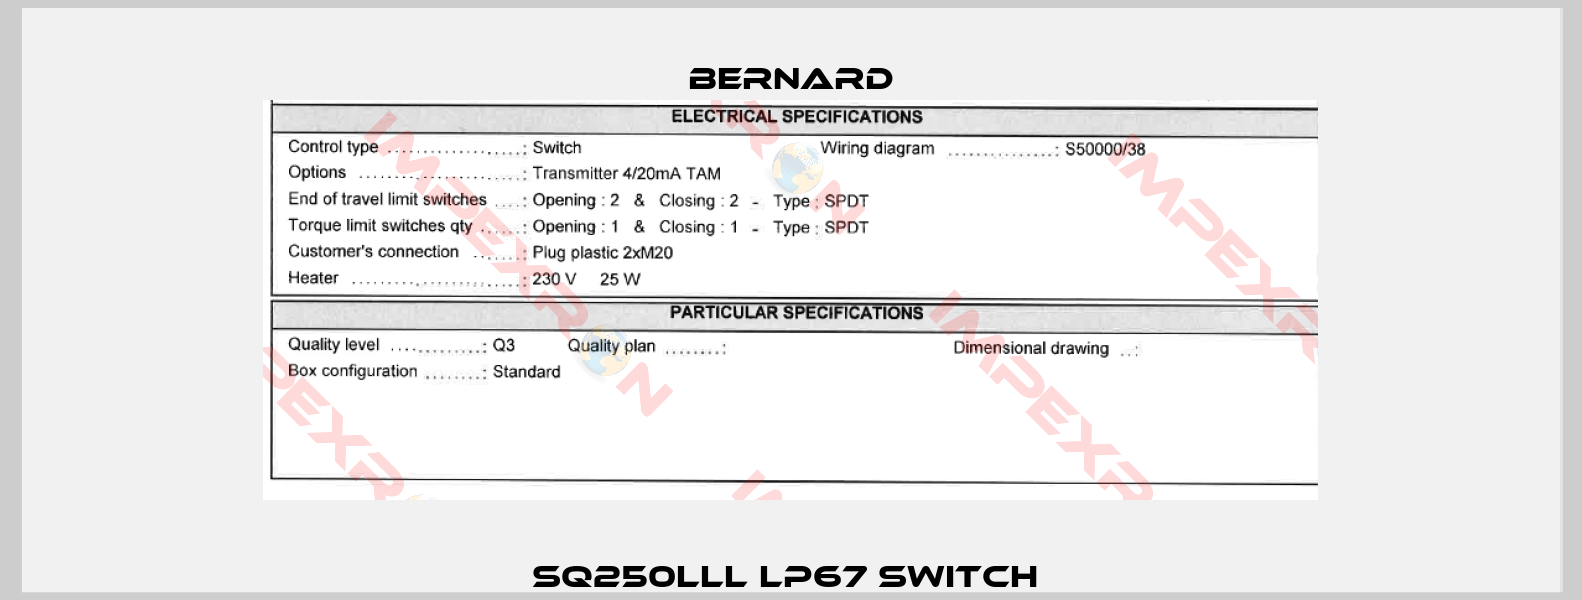 SQ250lll lP67 Switch -3